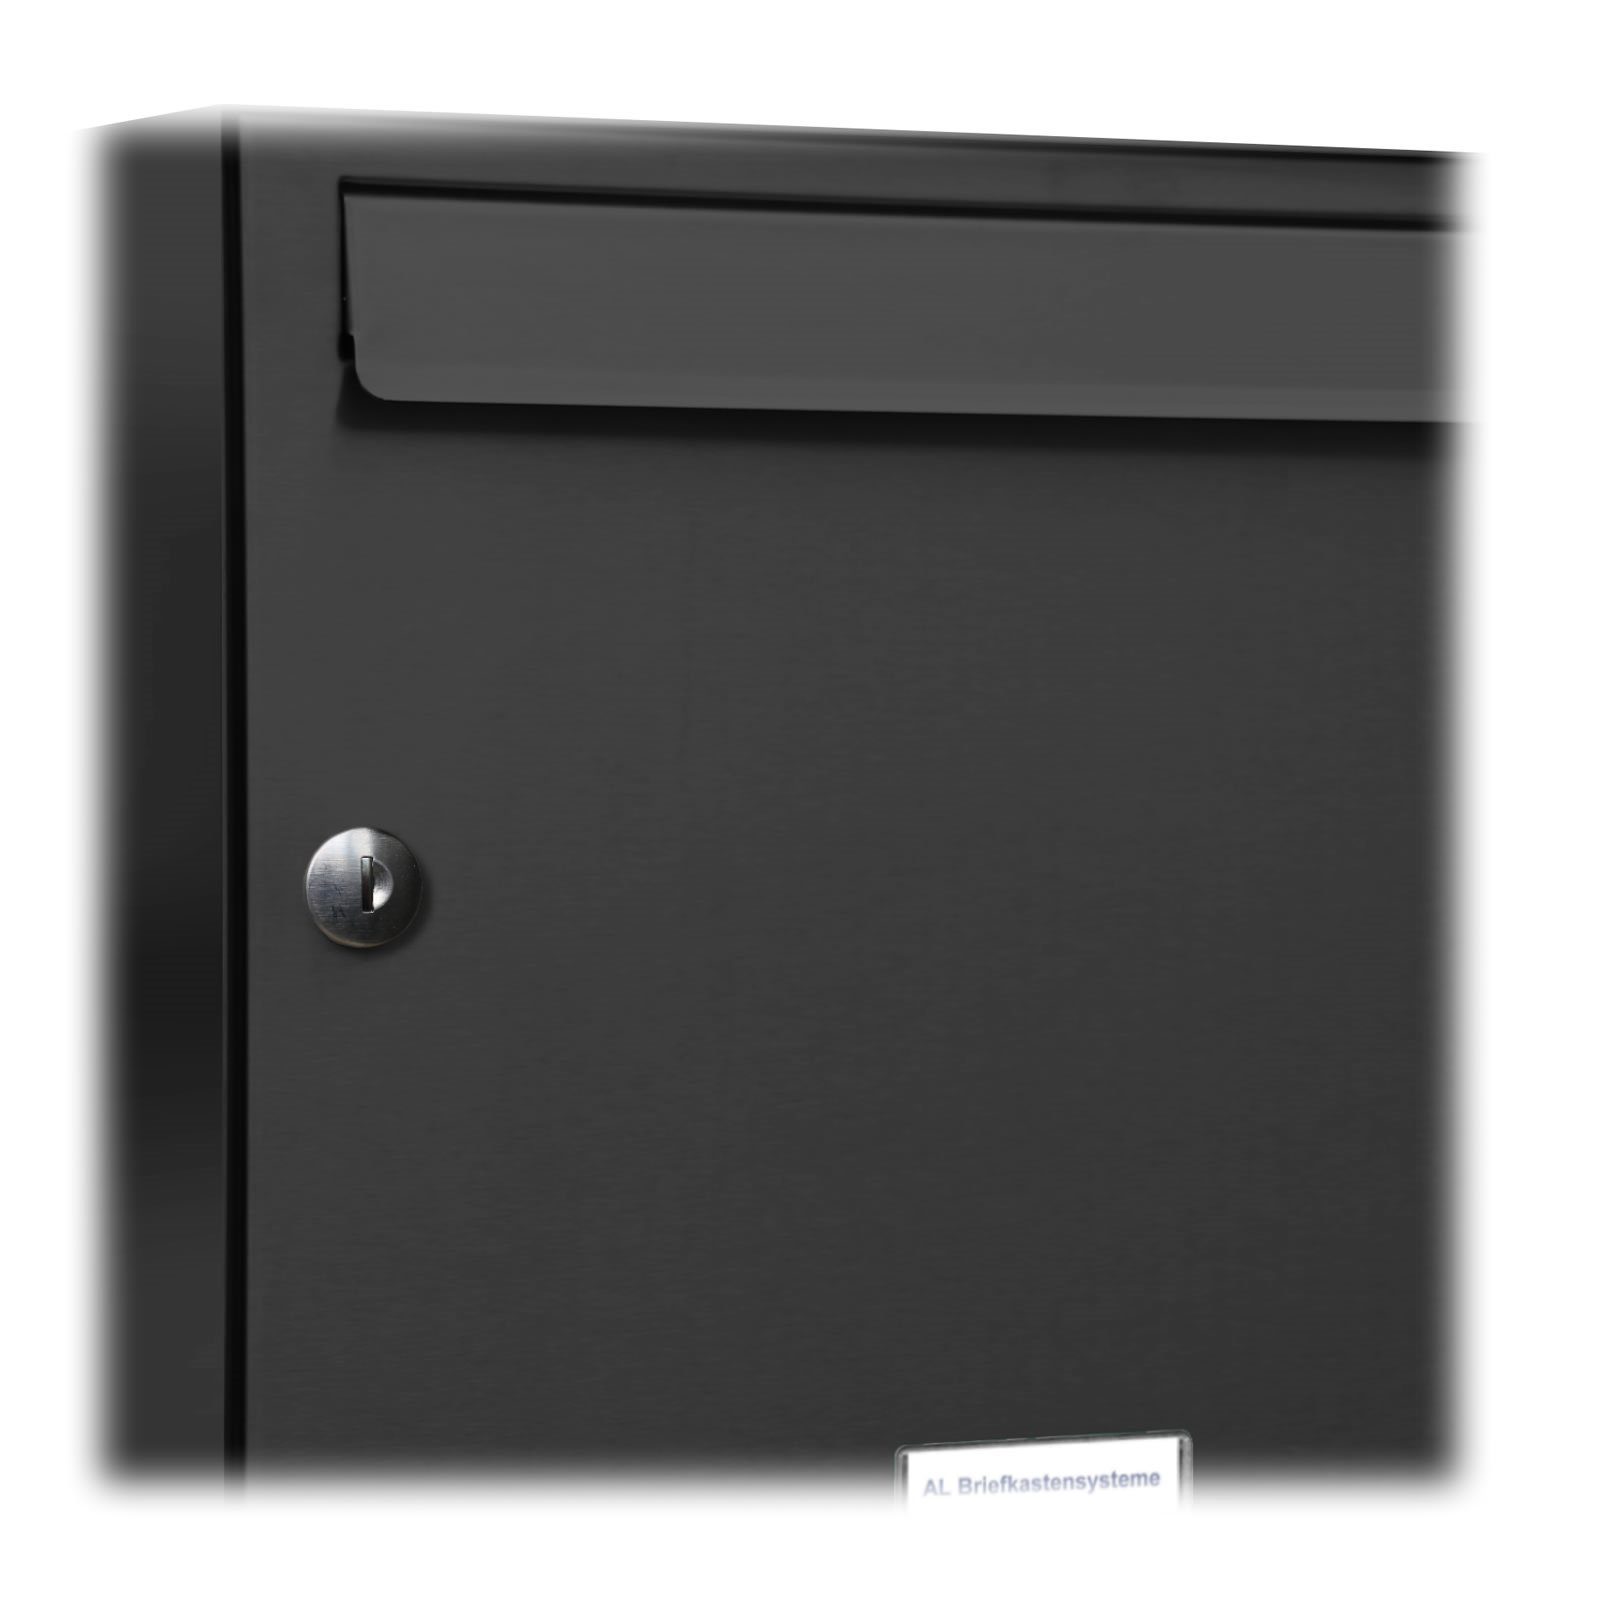 AL Briefkastensysteme Wandbriefkasten 5er Premium Anthrazit Farbe Außen 7016 2x3 für Wand Briefkasten RAL